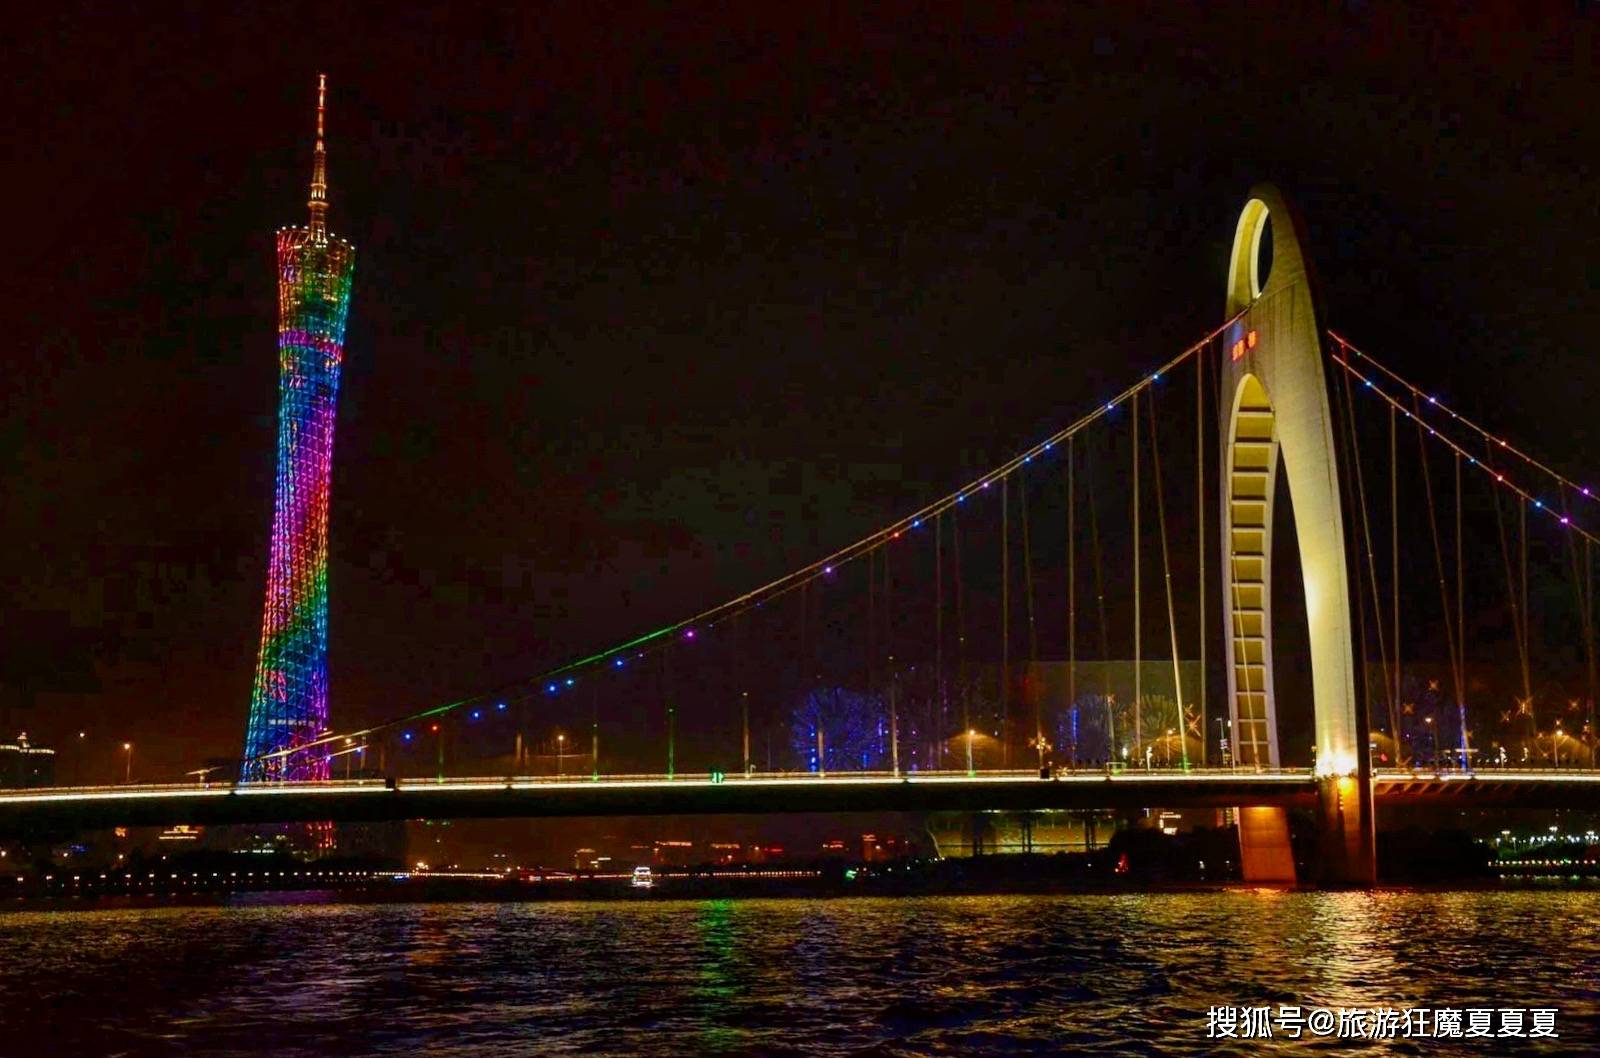 广东广州市的地标建筑,为中国第一高塔,塔顶有五个世界纪录